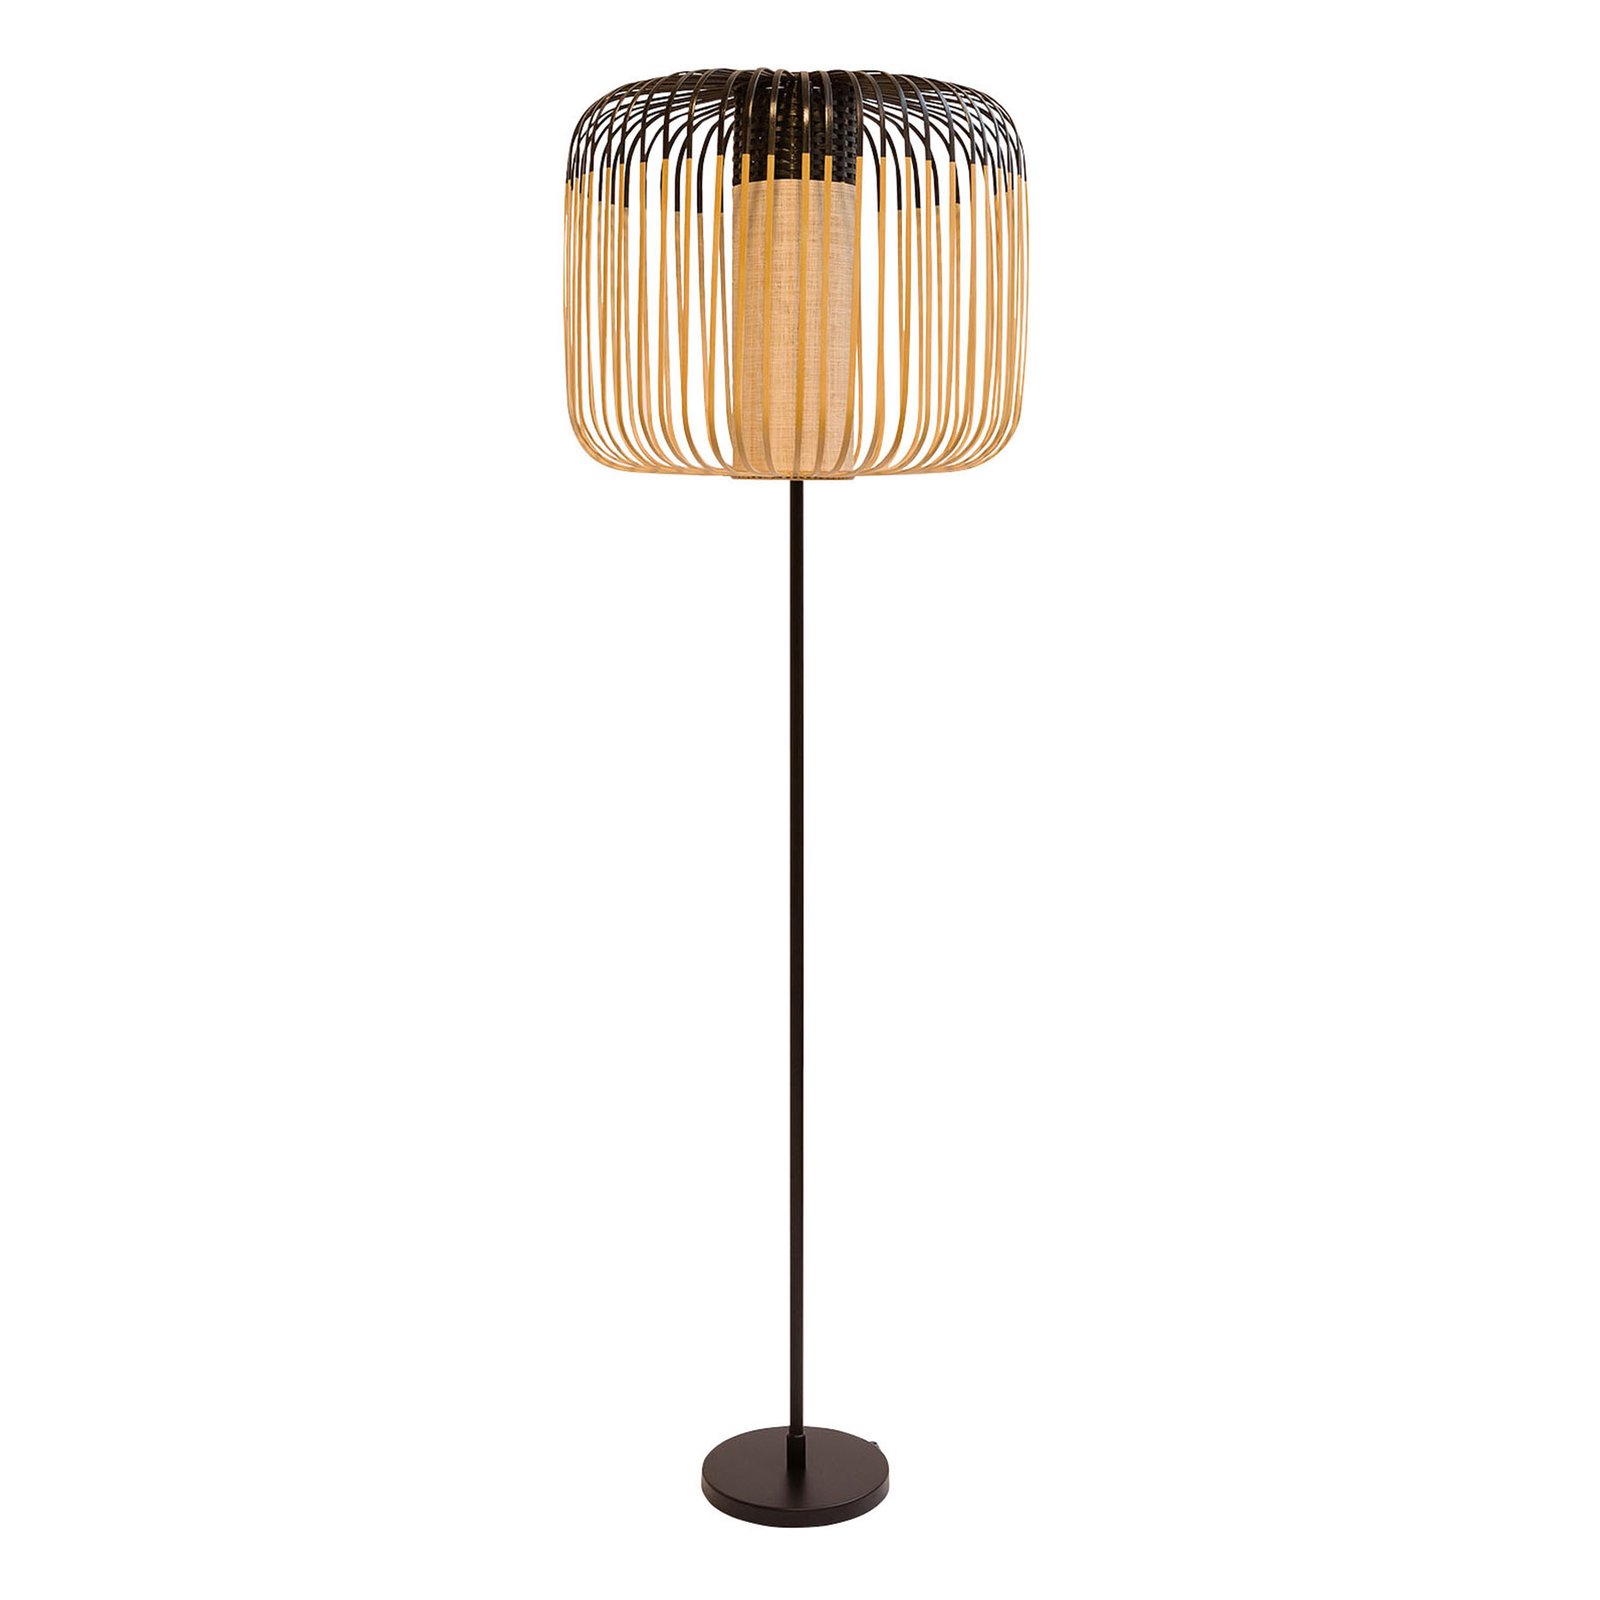 Forestier Bamboo Light gulvlampe, 1 lyskilde svart